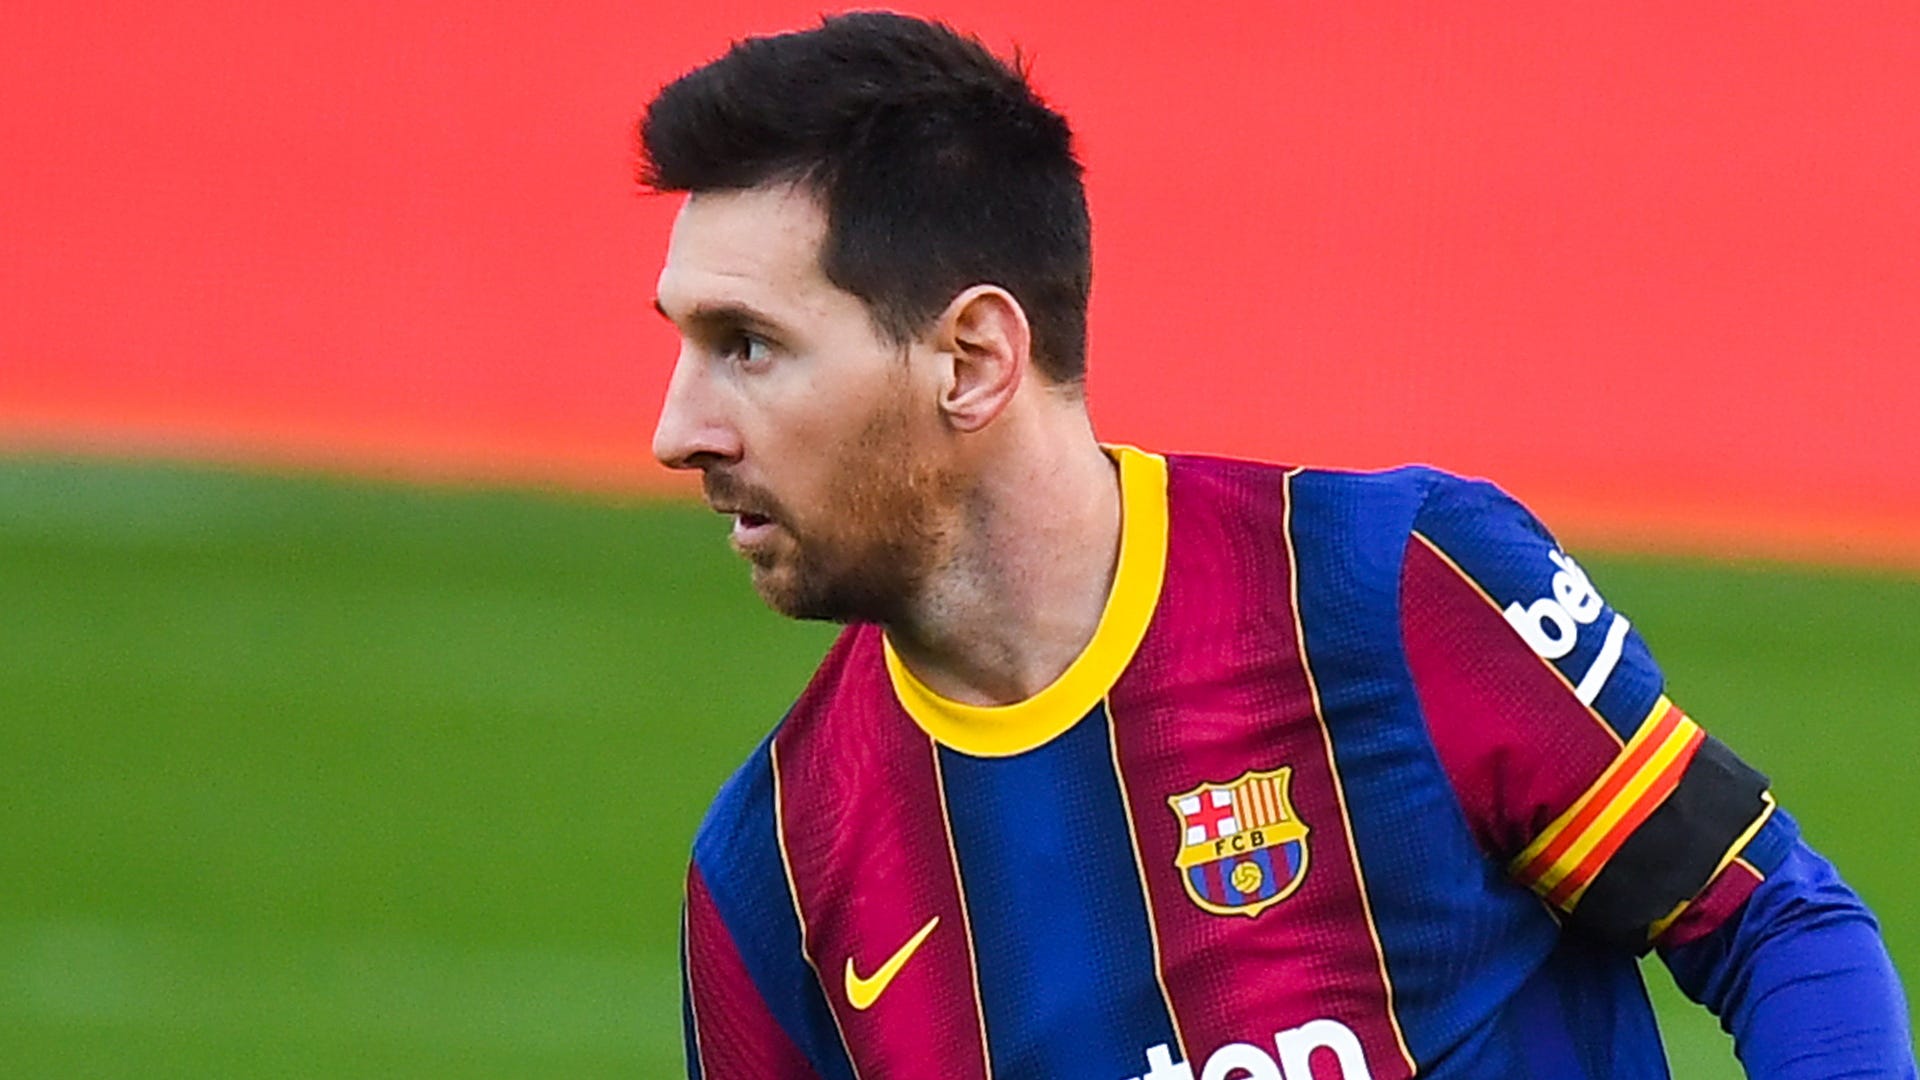 Tin đồn về việc Lionel Messi chuyển đến một đội bóng khác đang đánh dấu sự kiện được mong đợi của người hâm mộ. Hãy cập nhật thông tin mới nhất về Messi transfer rumors và theo dõi mọi thông tin liên quan đến siêu sao này trên trang web của chúng tôi!